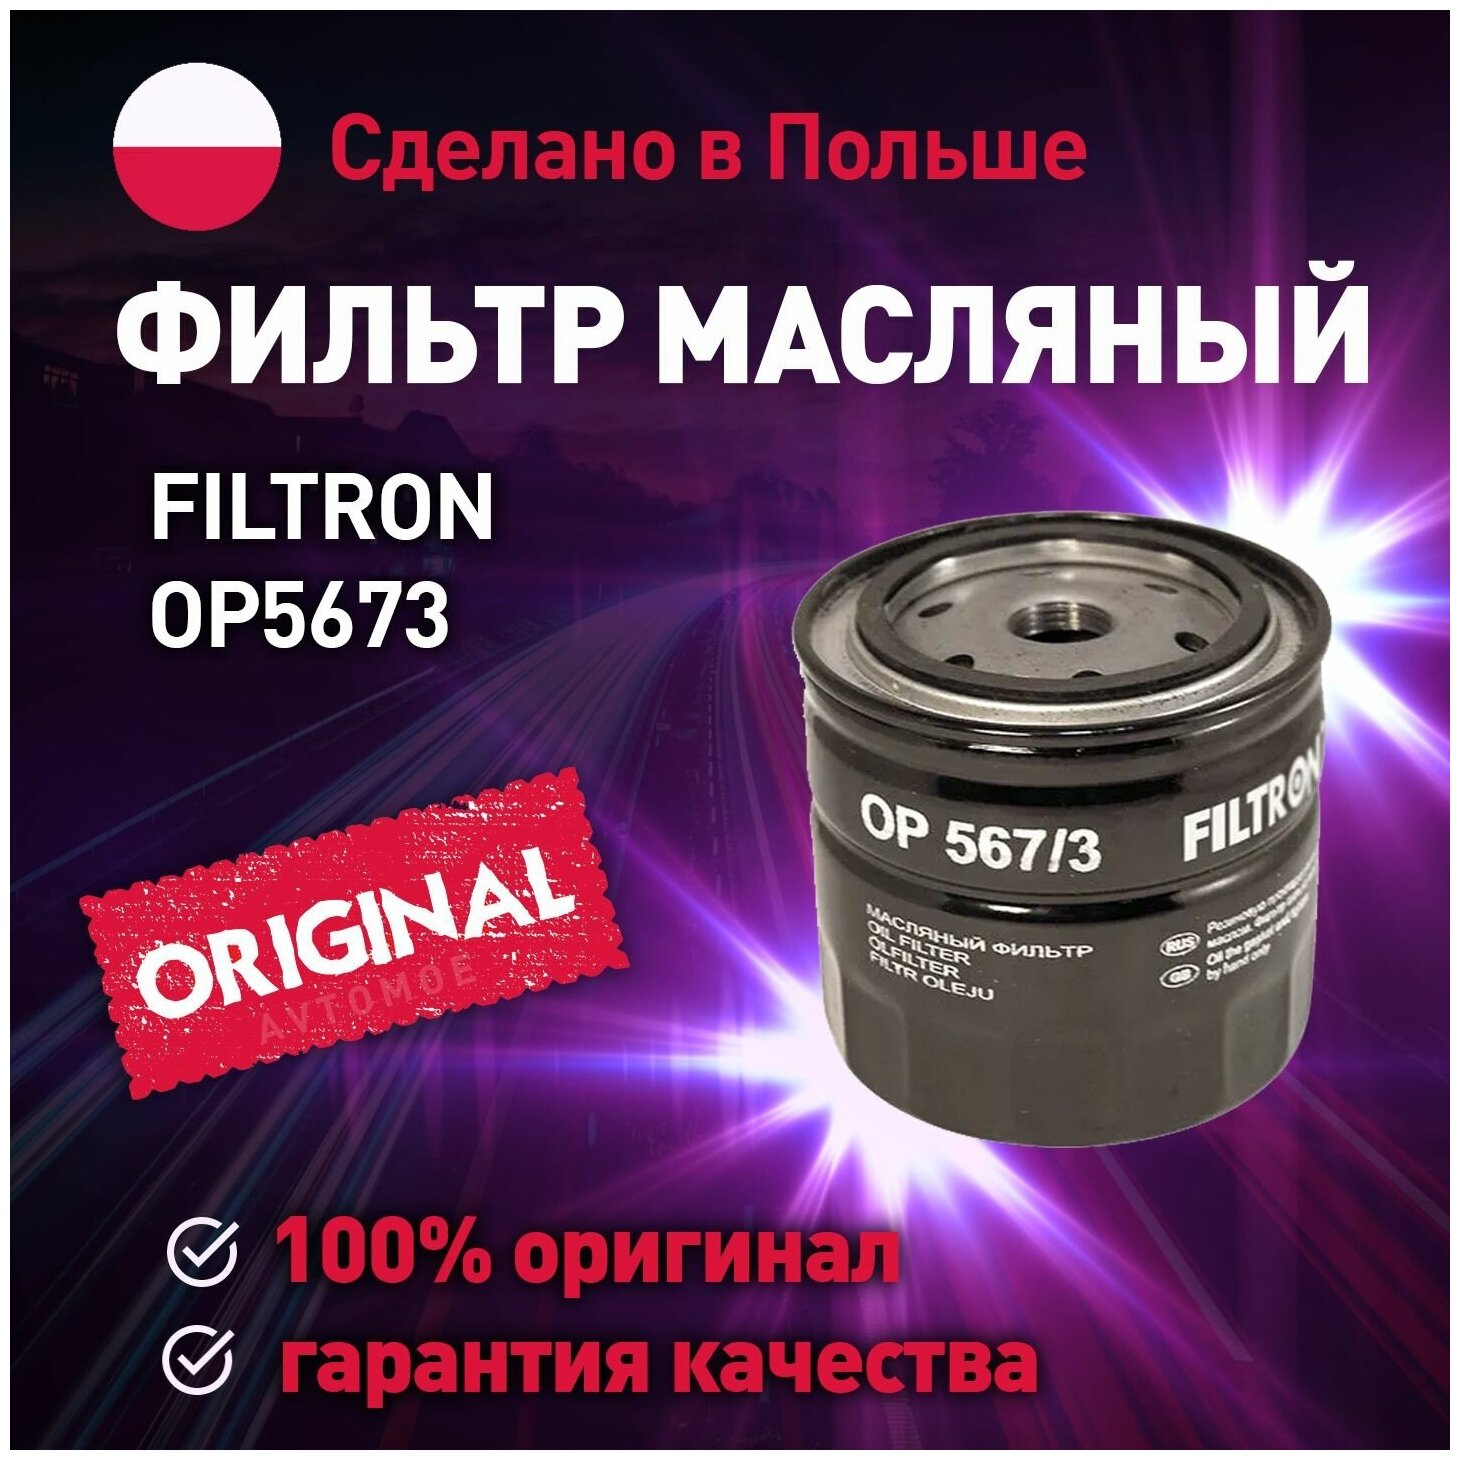 Фильтр масляный OP5673 FILTRON для Nissan Navara, Pathfinder, X-Trail / Масляный фильтр Фильтрон для Ниссан Навара, Патфайндер, Х-Трейл